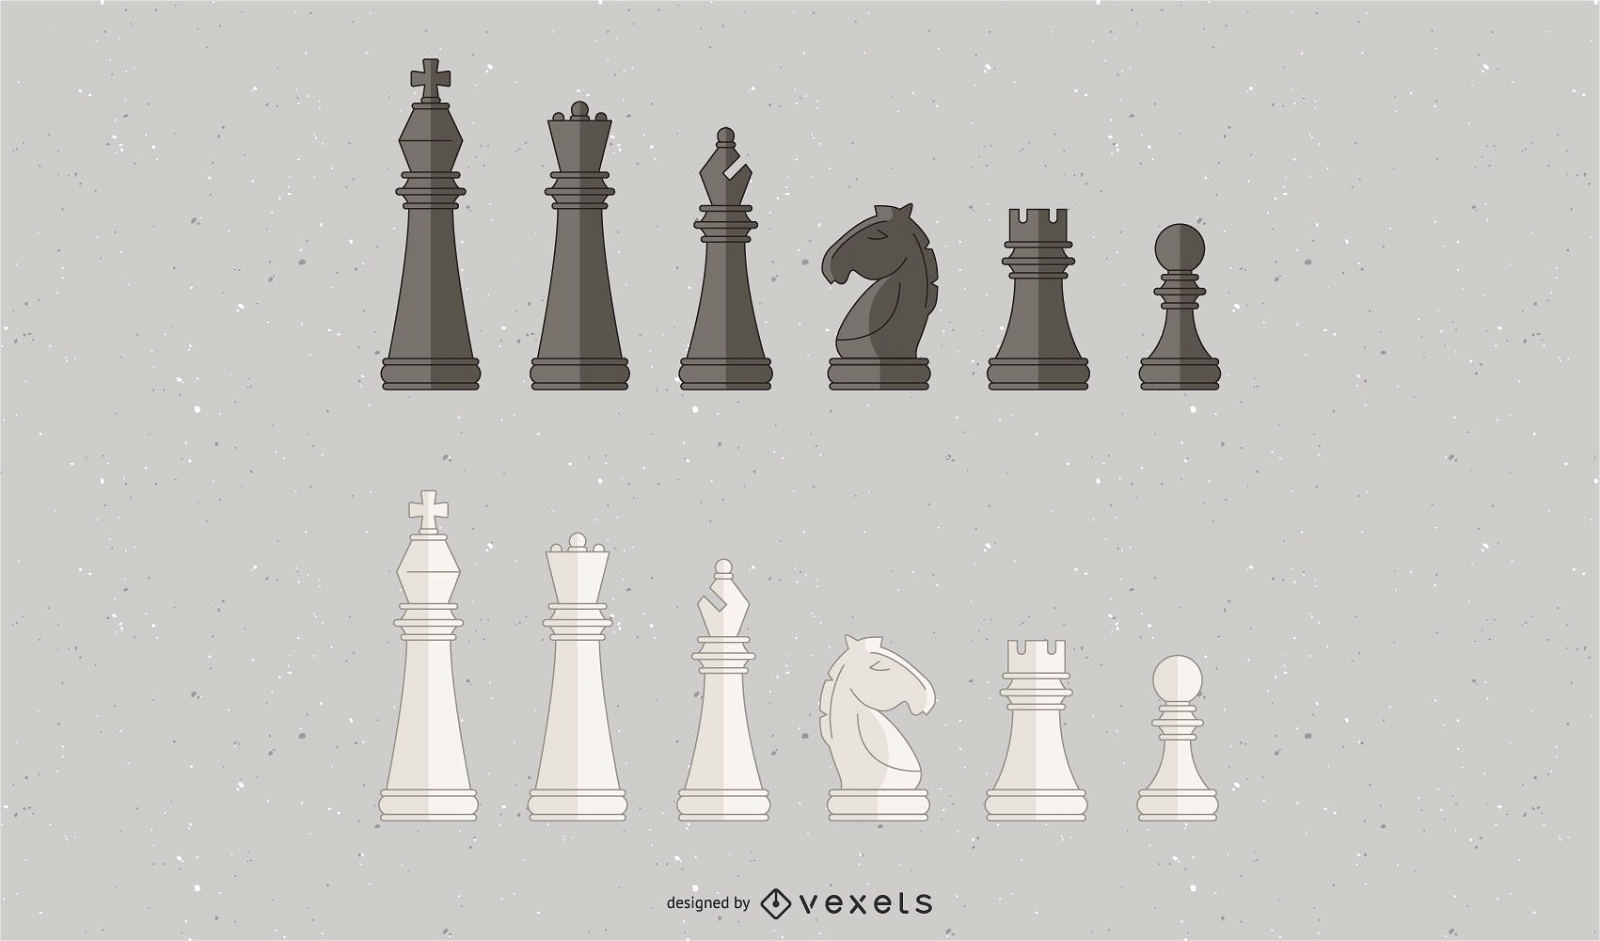 gráfico de ilustração vetorial de peça de xadrez de cavaleiro de